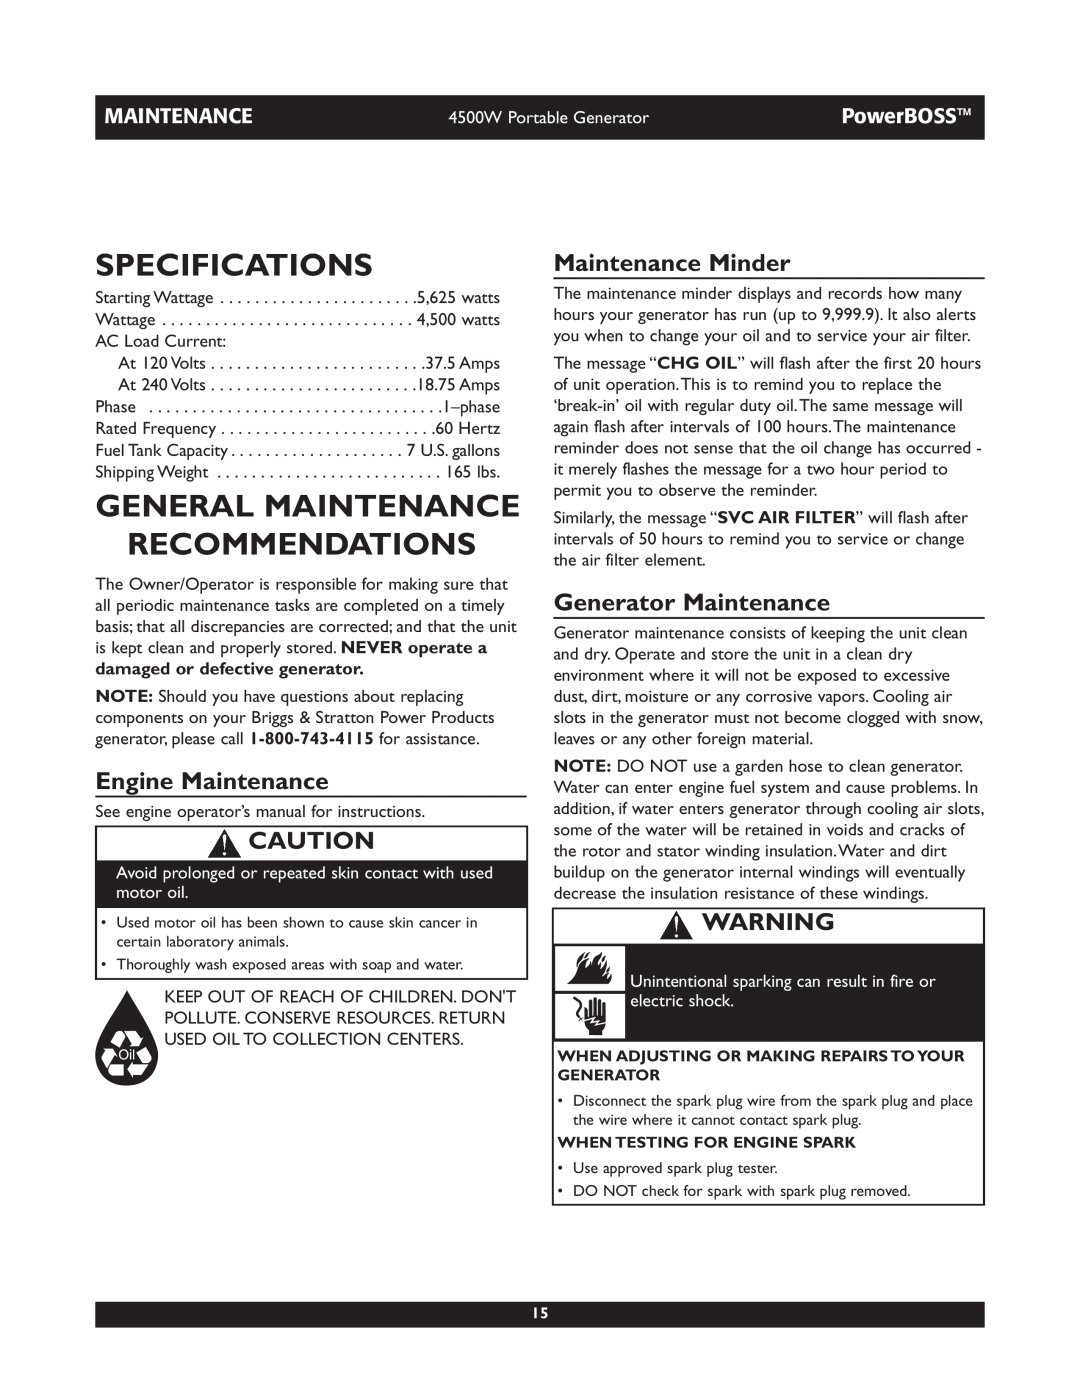 Briggs & Stratton 01648-1 Specifications, General Maintenance Recommendations, Engine Maintenance, Maintenance Minder 